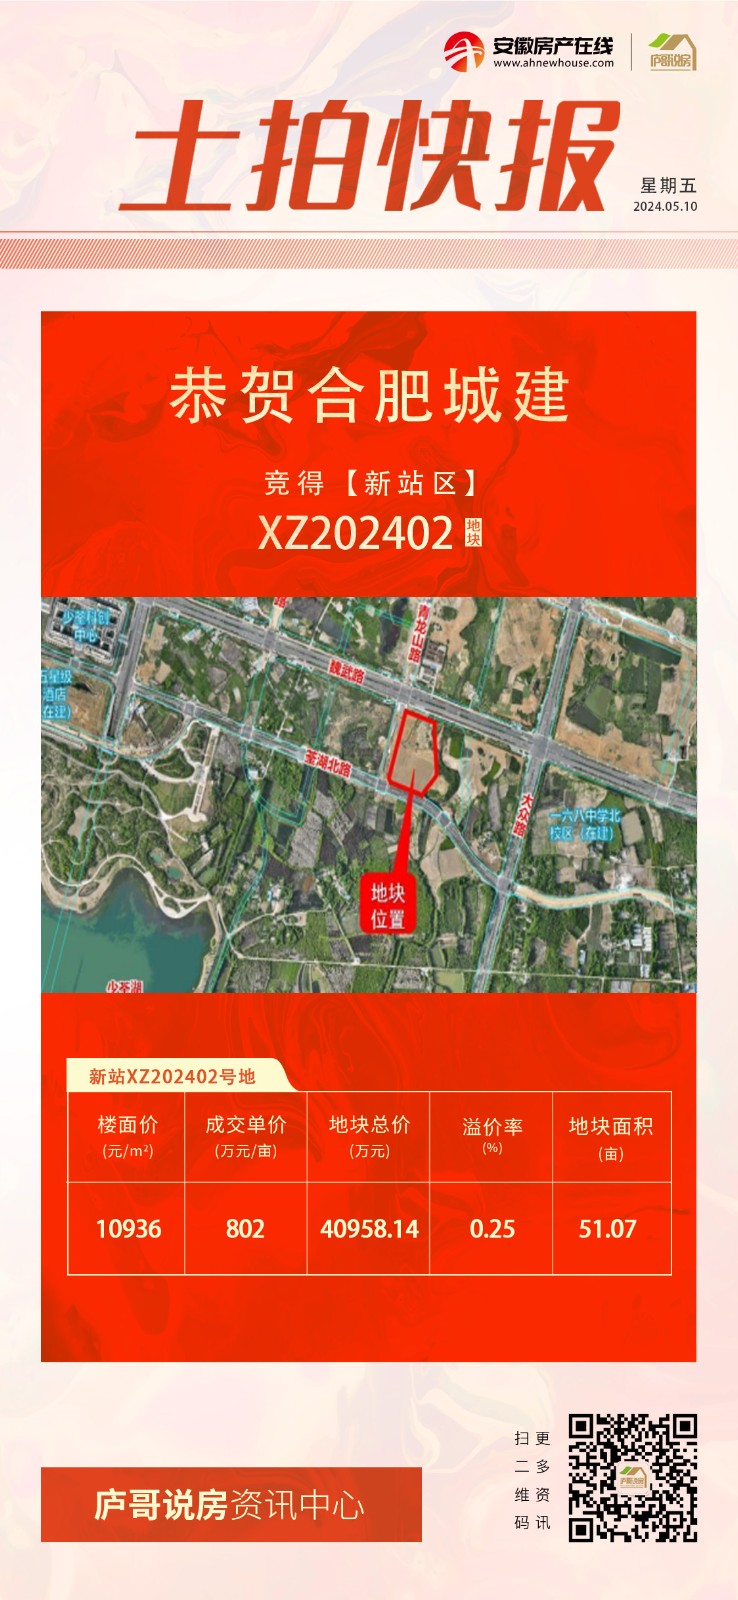 快讯丨合肥城建竞得新站区XZ202402号地块